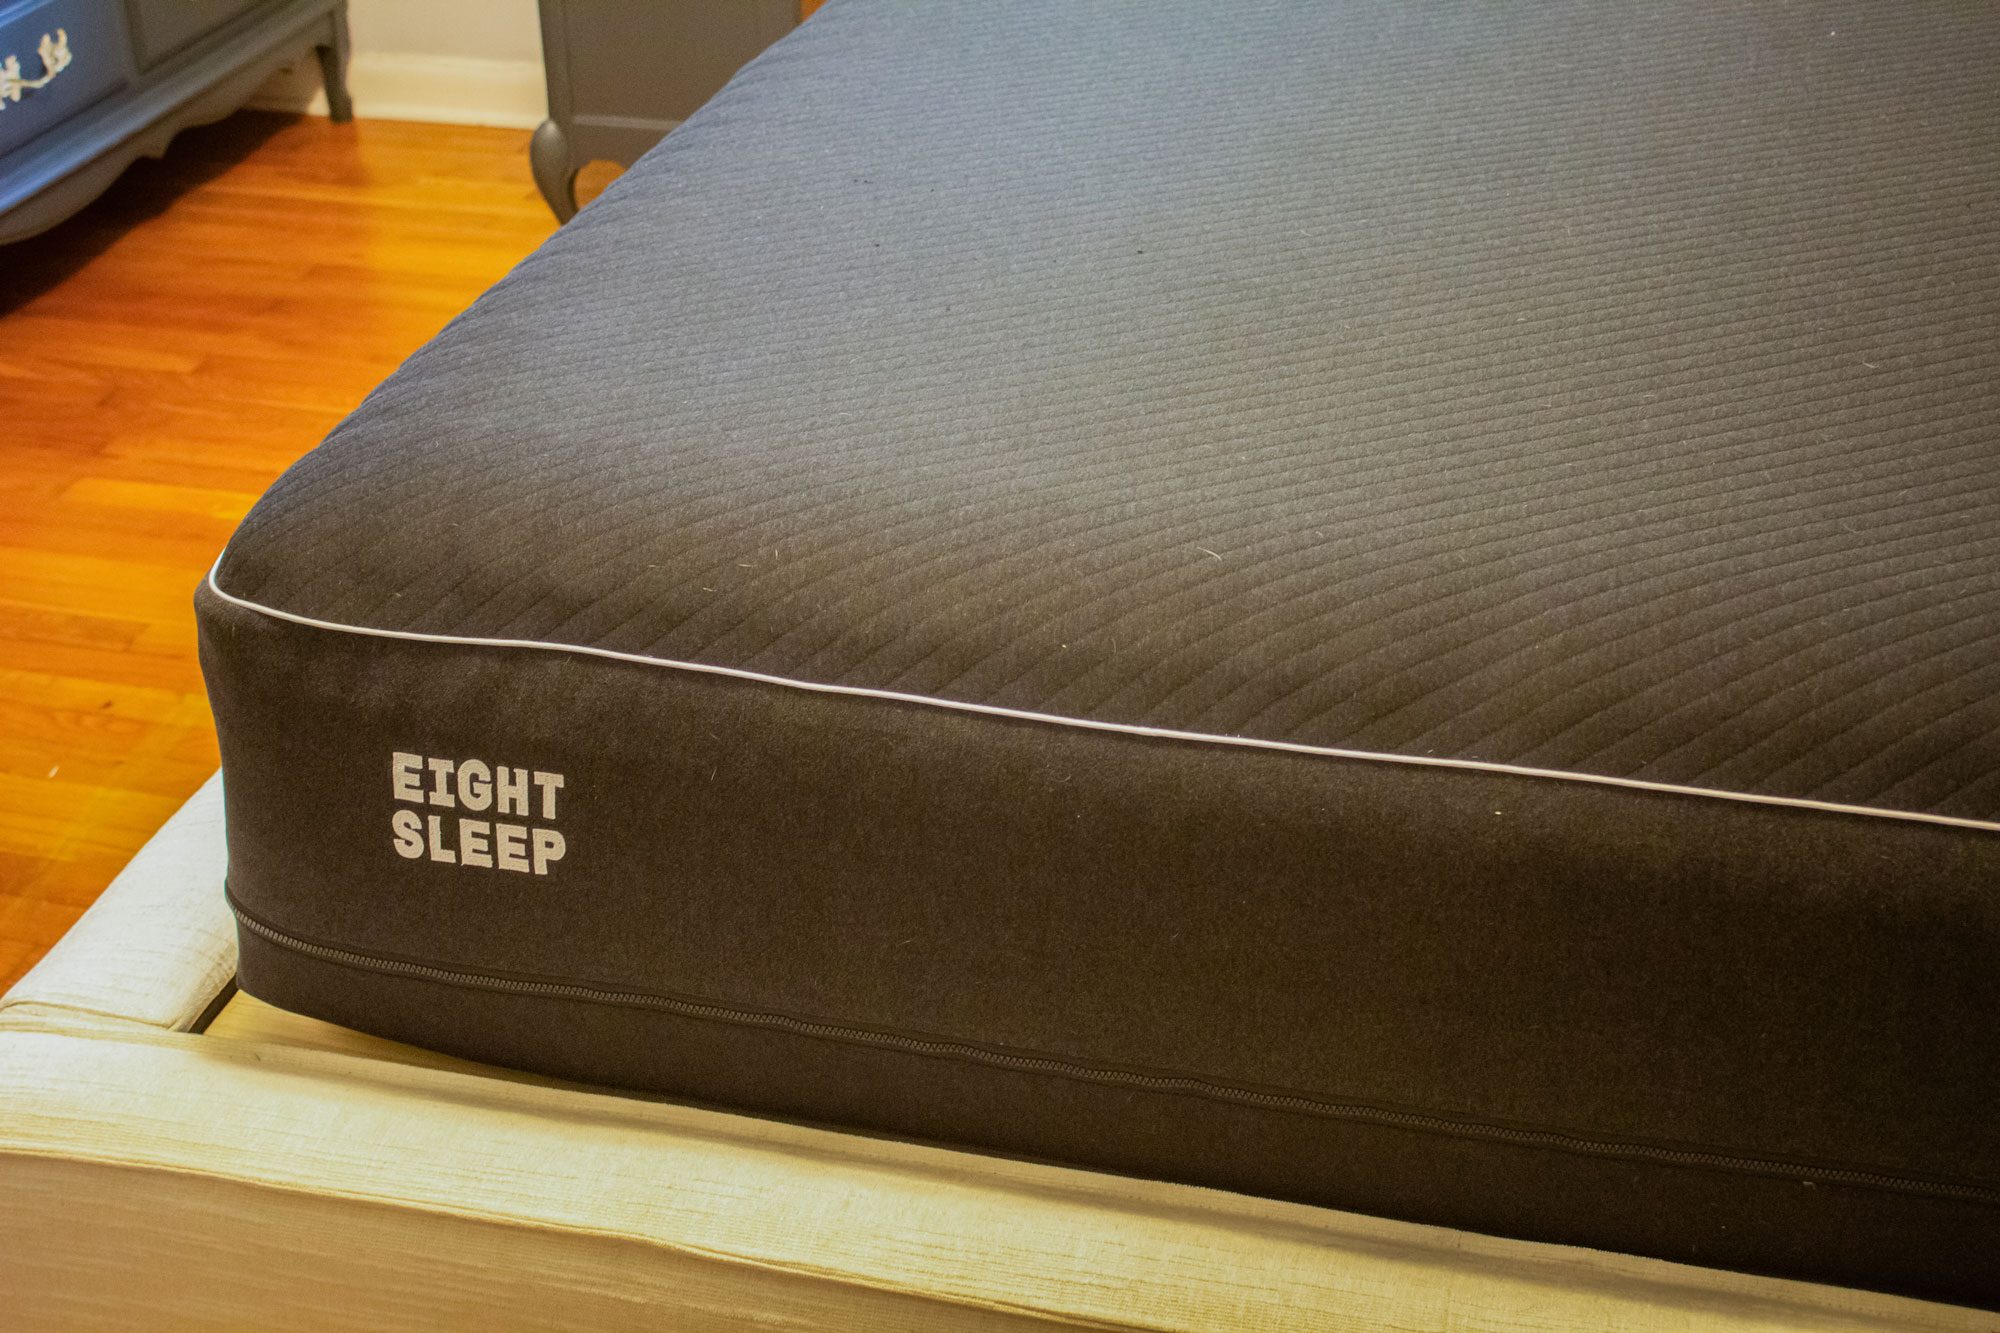 Eight Sleep Pod Cooling Mattress features